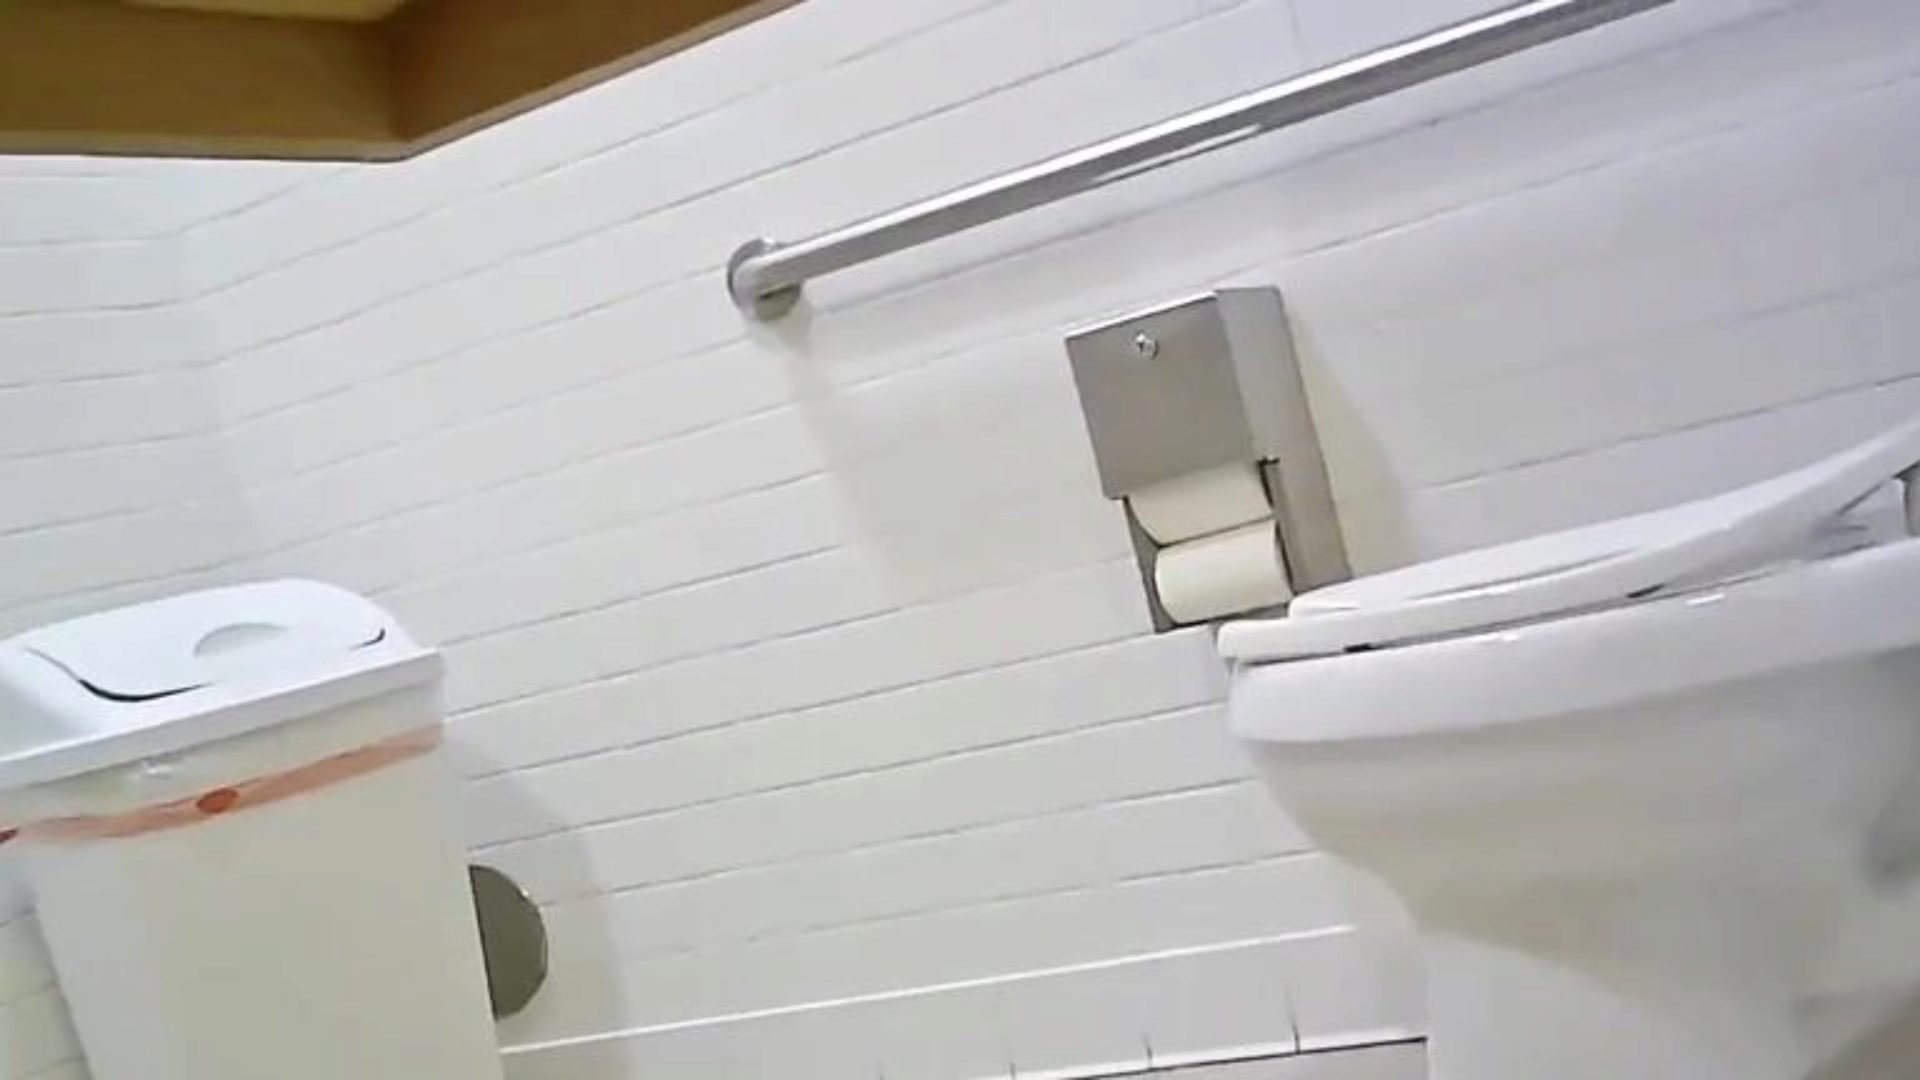 κρυμμένη κάμερα τουαλέτας - ταιριάζει κορίτσι, ολοκληρώστε τον κώλο, ελέγξτε αυτό, πείτε μου τη γνώμη σας;